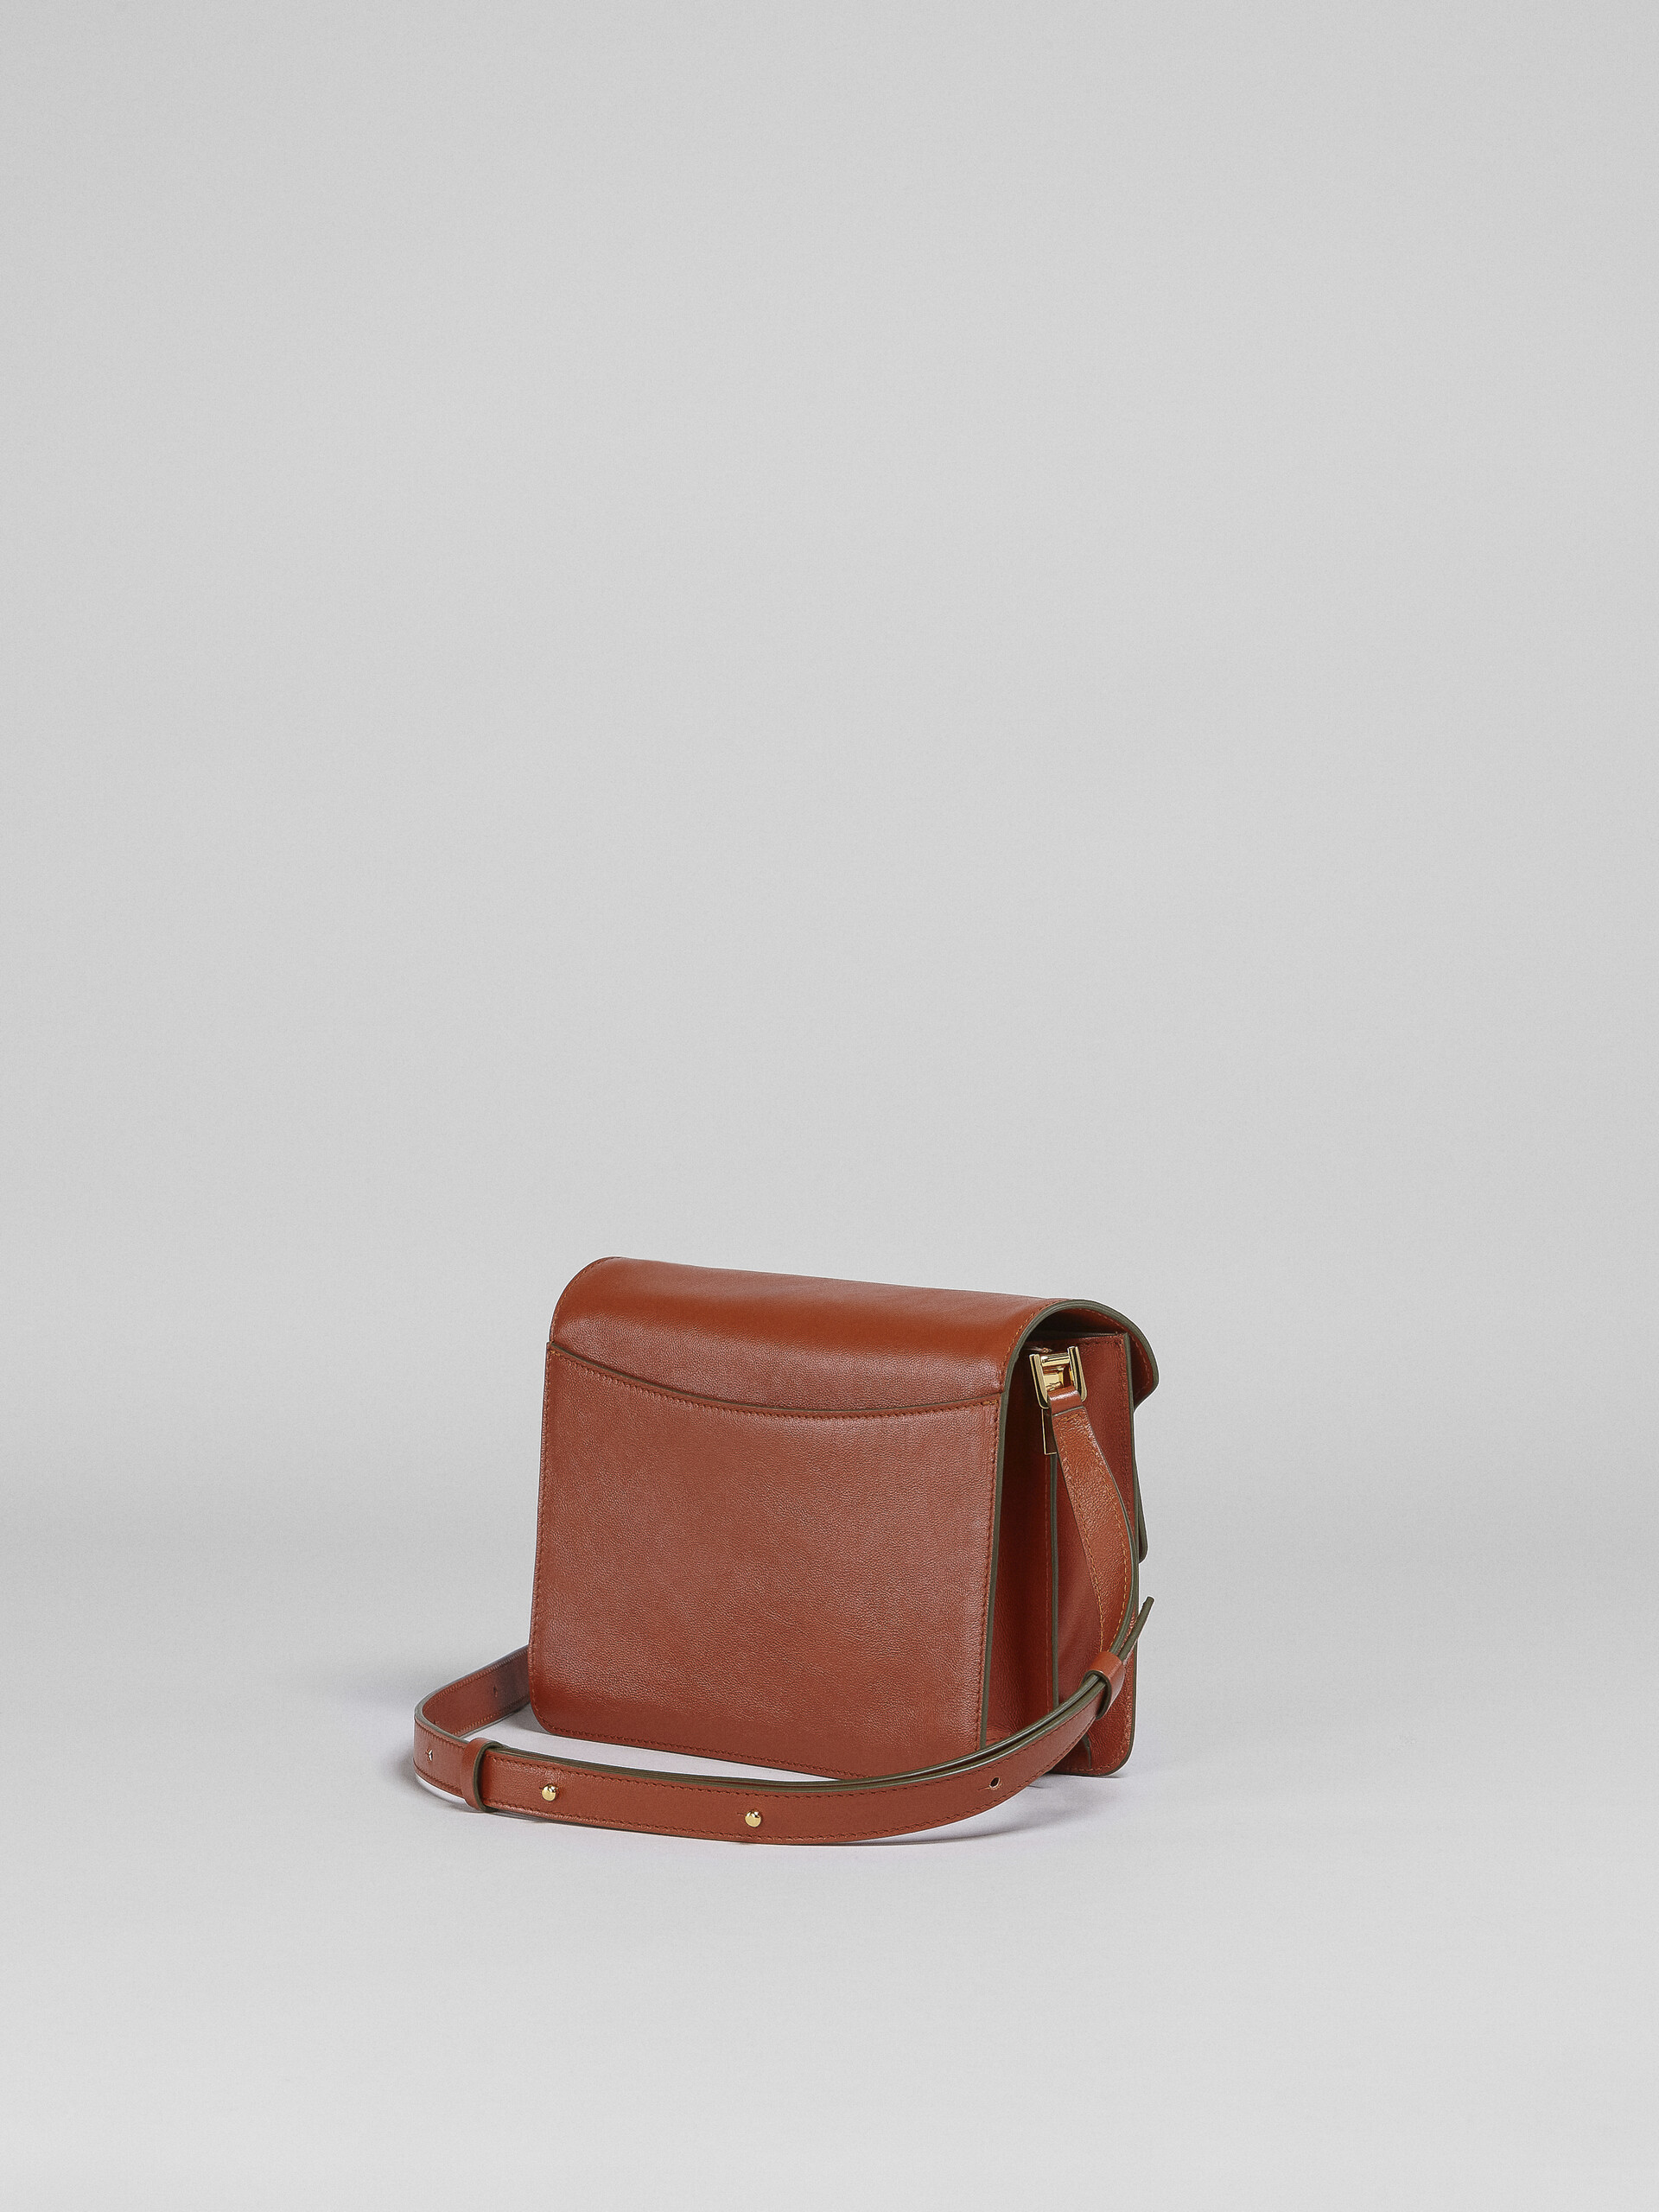 TRUNK SOFT medium bag in brown leather - Shoulder Bag - Image 3